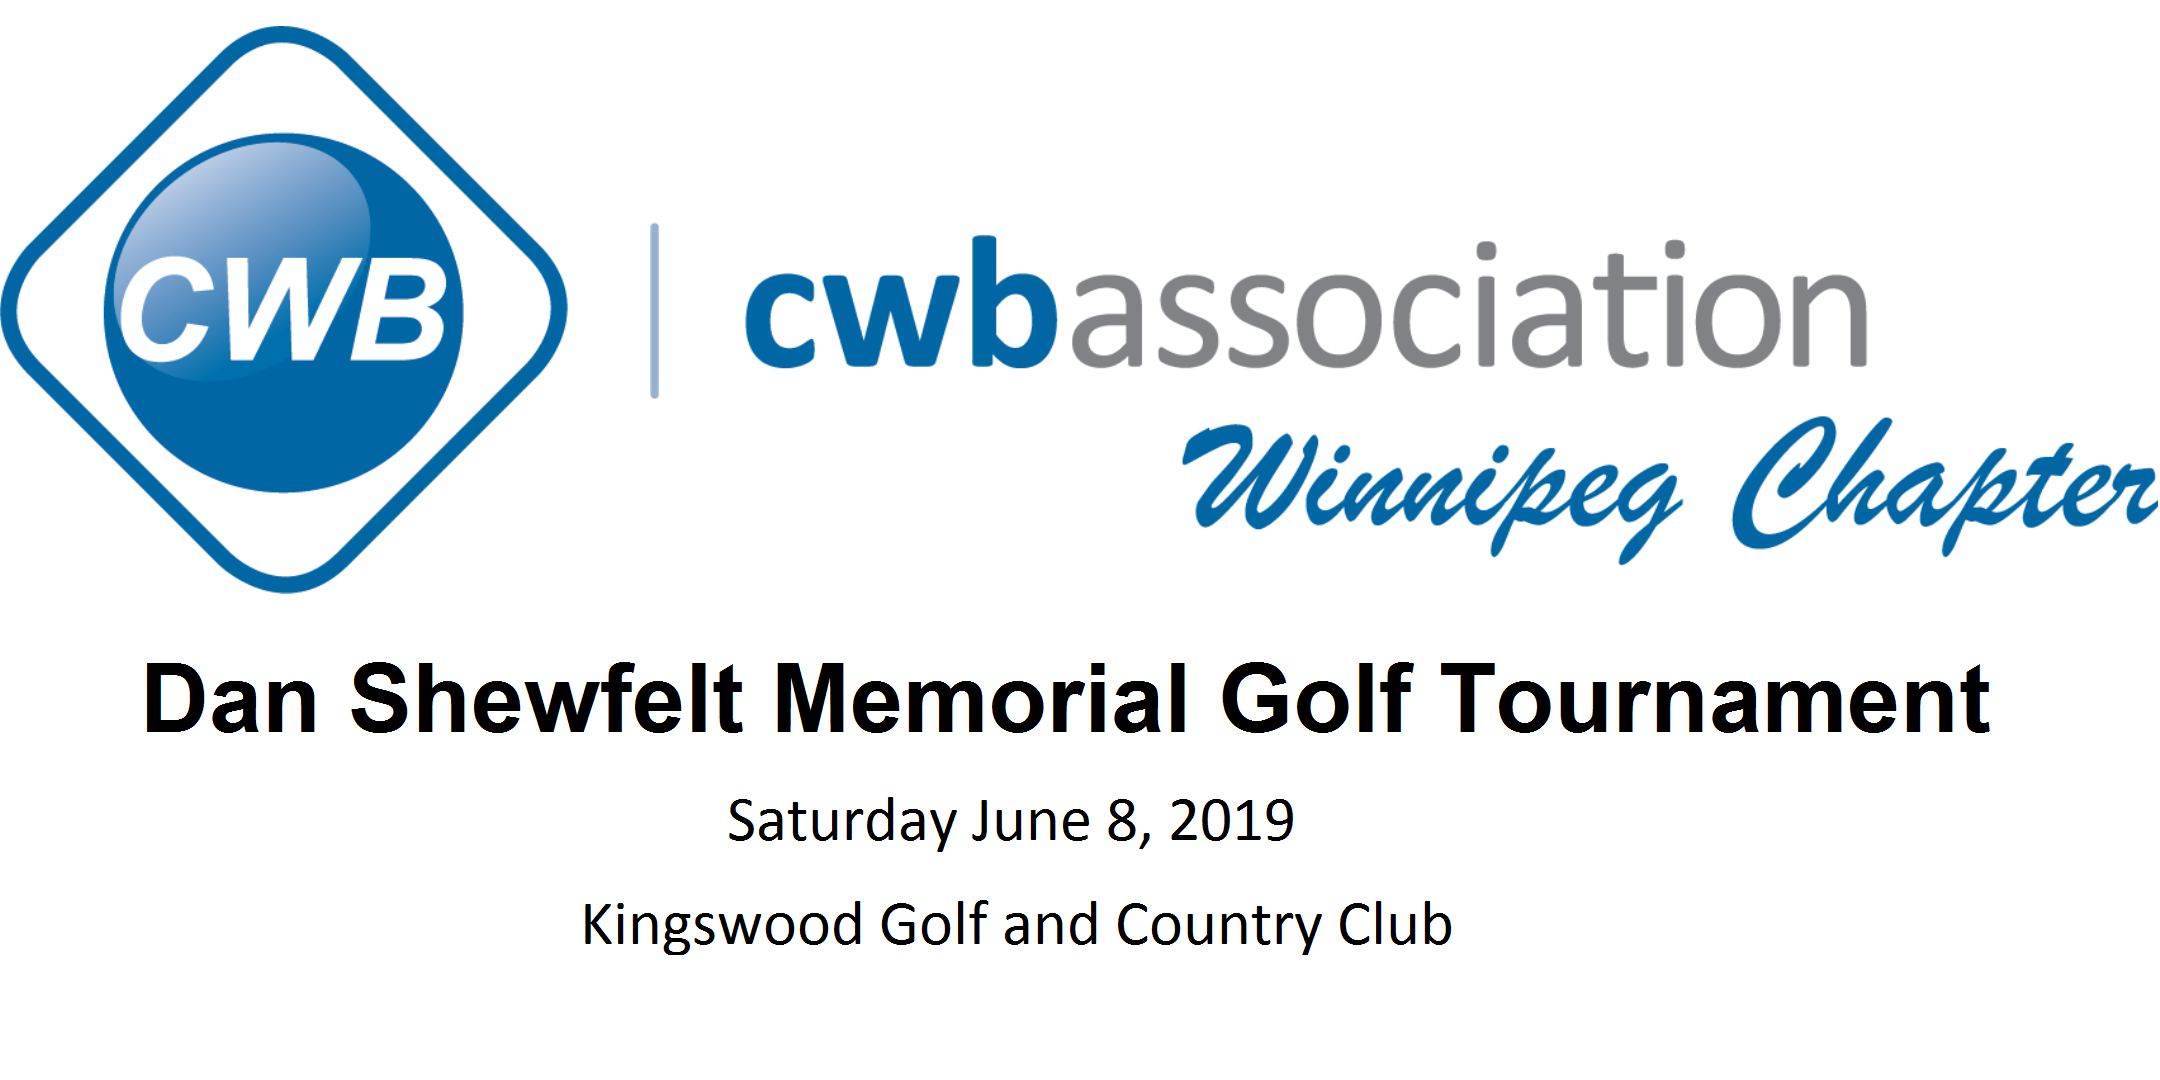 Dan Shewfelt Memorial Golf Tournament